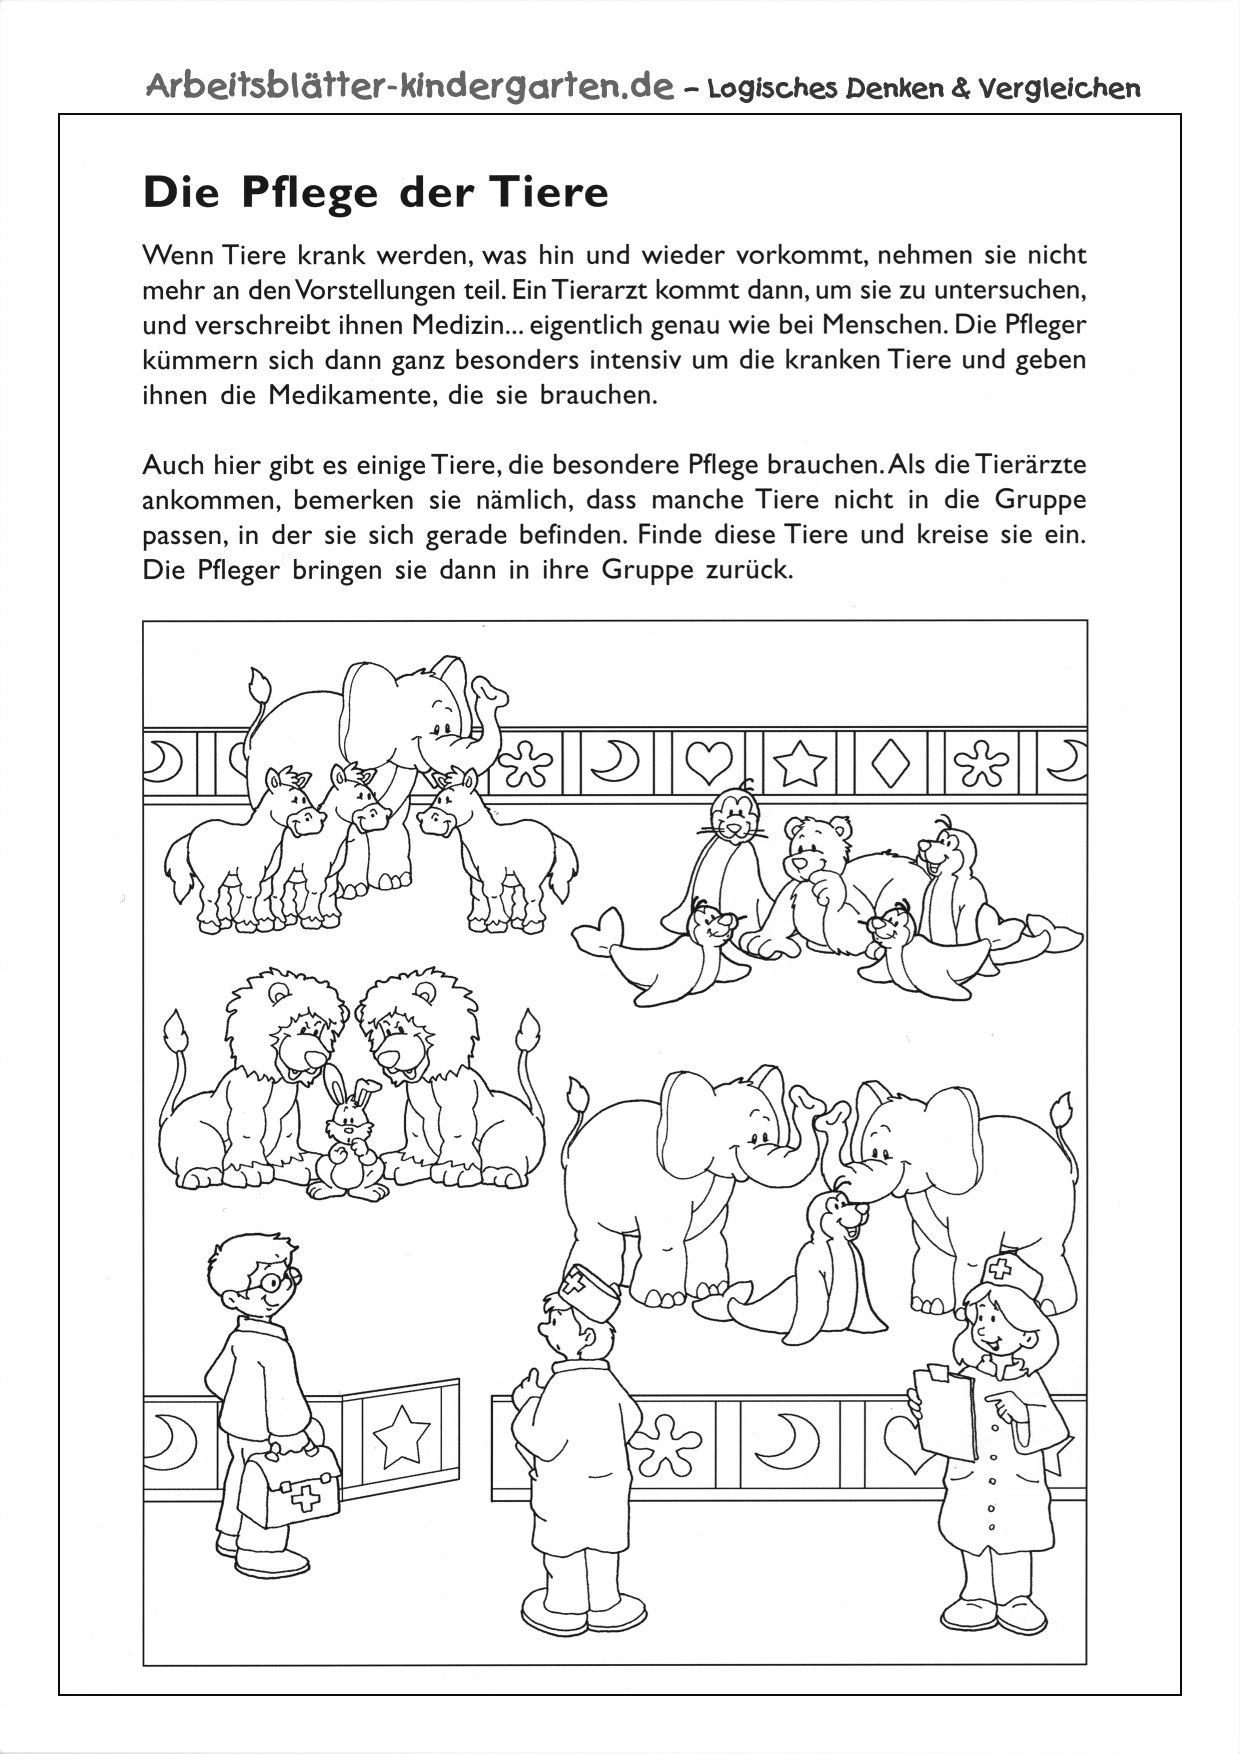 Arbeitsblatt logisches Denken - Die Pflege der Tiere